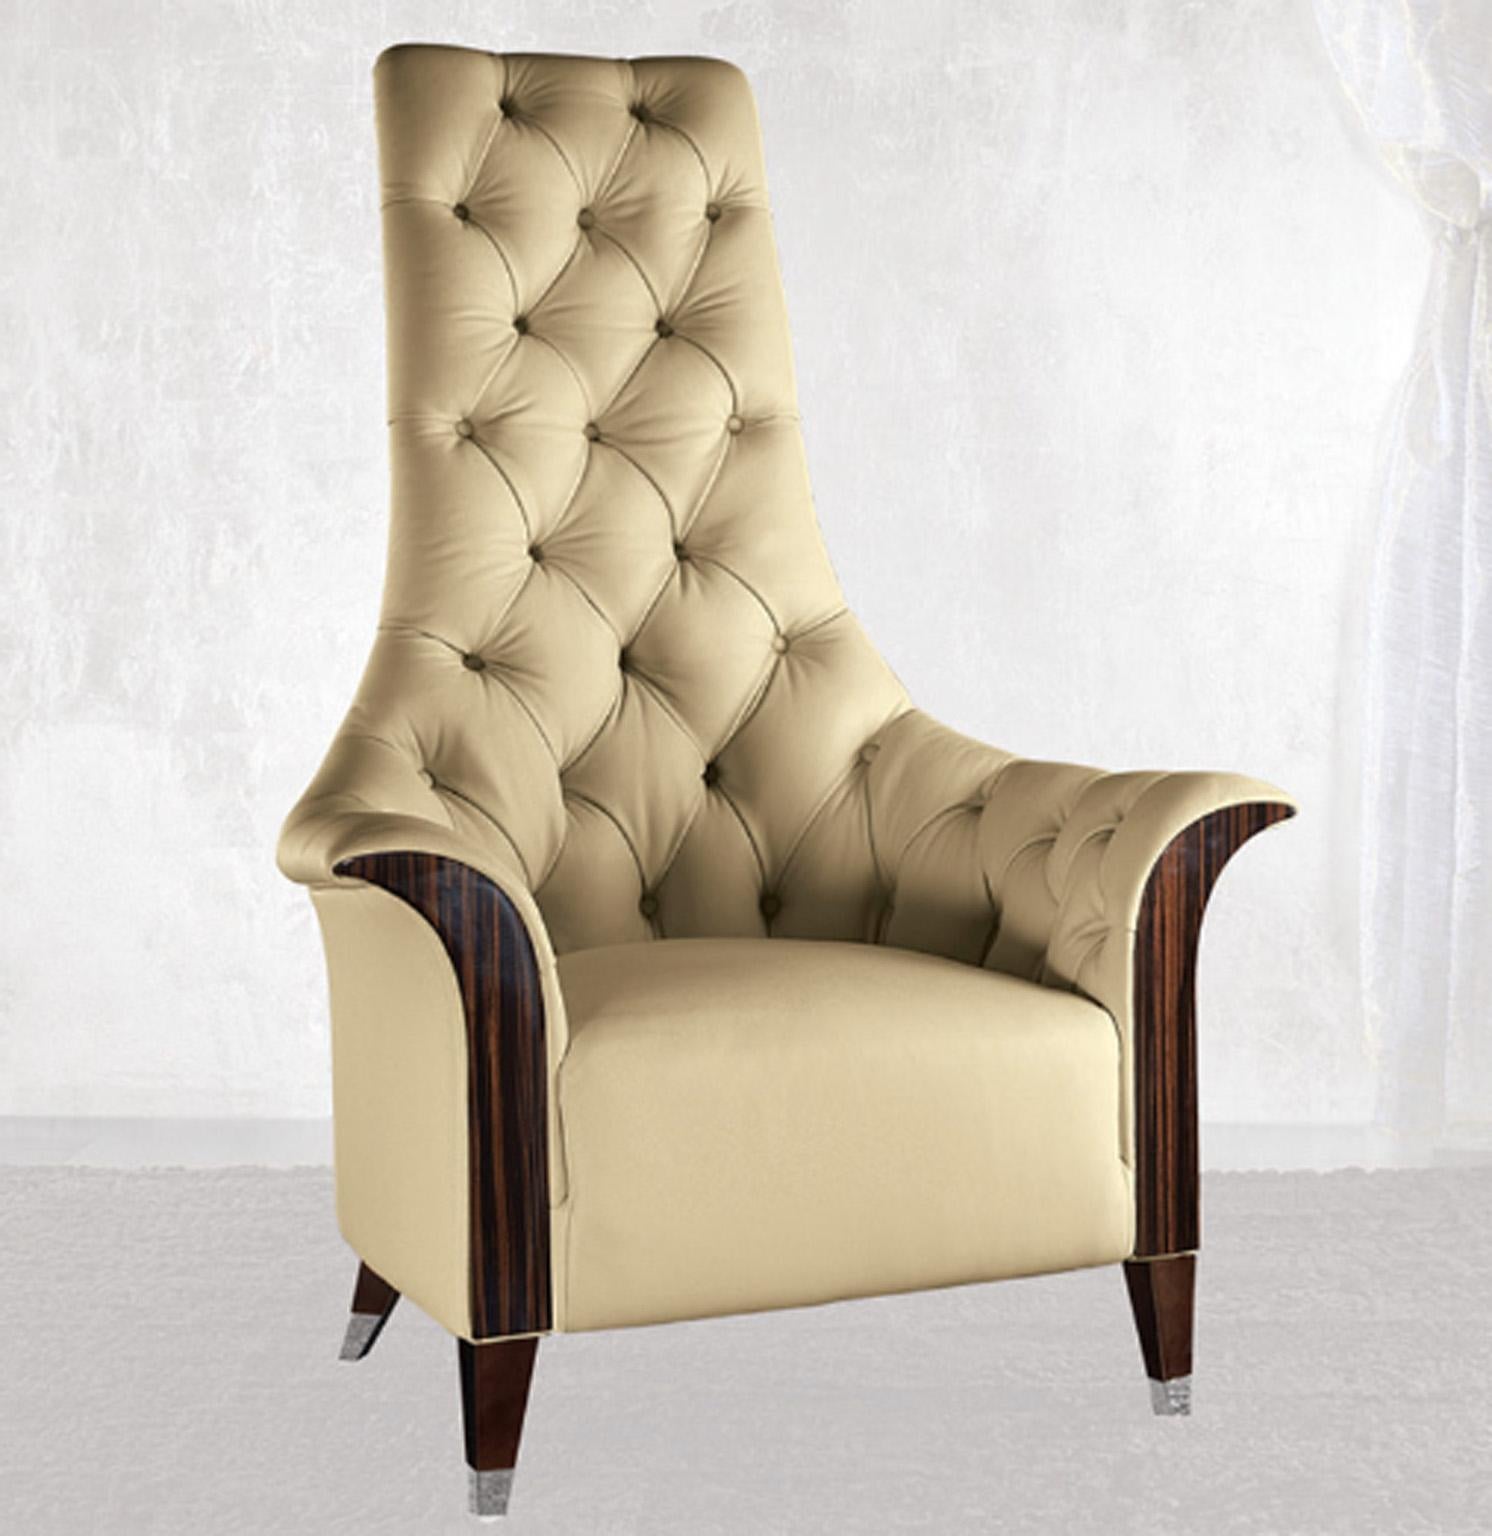 Grand fauteuil avec façades en bois Makassar ébène en polyester brillant recouvert de cuir de première qualité tufté.
Pieds en acier chromé.

Taille : cm 92 L x 86 P x 127 H
Taille : 36